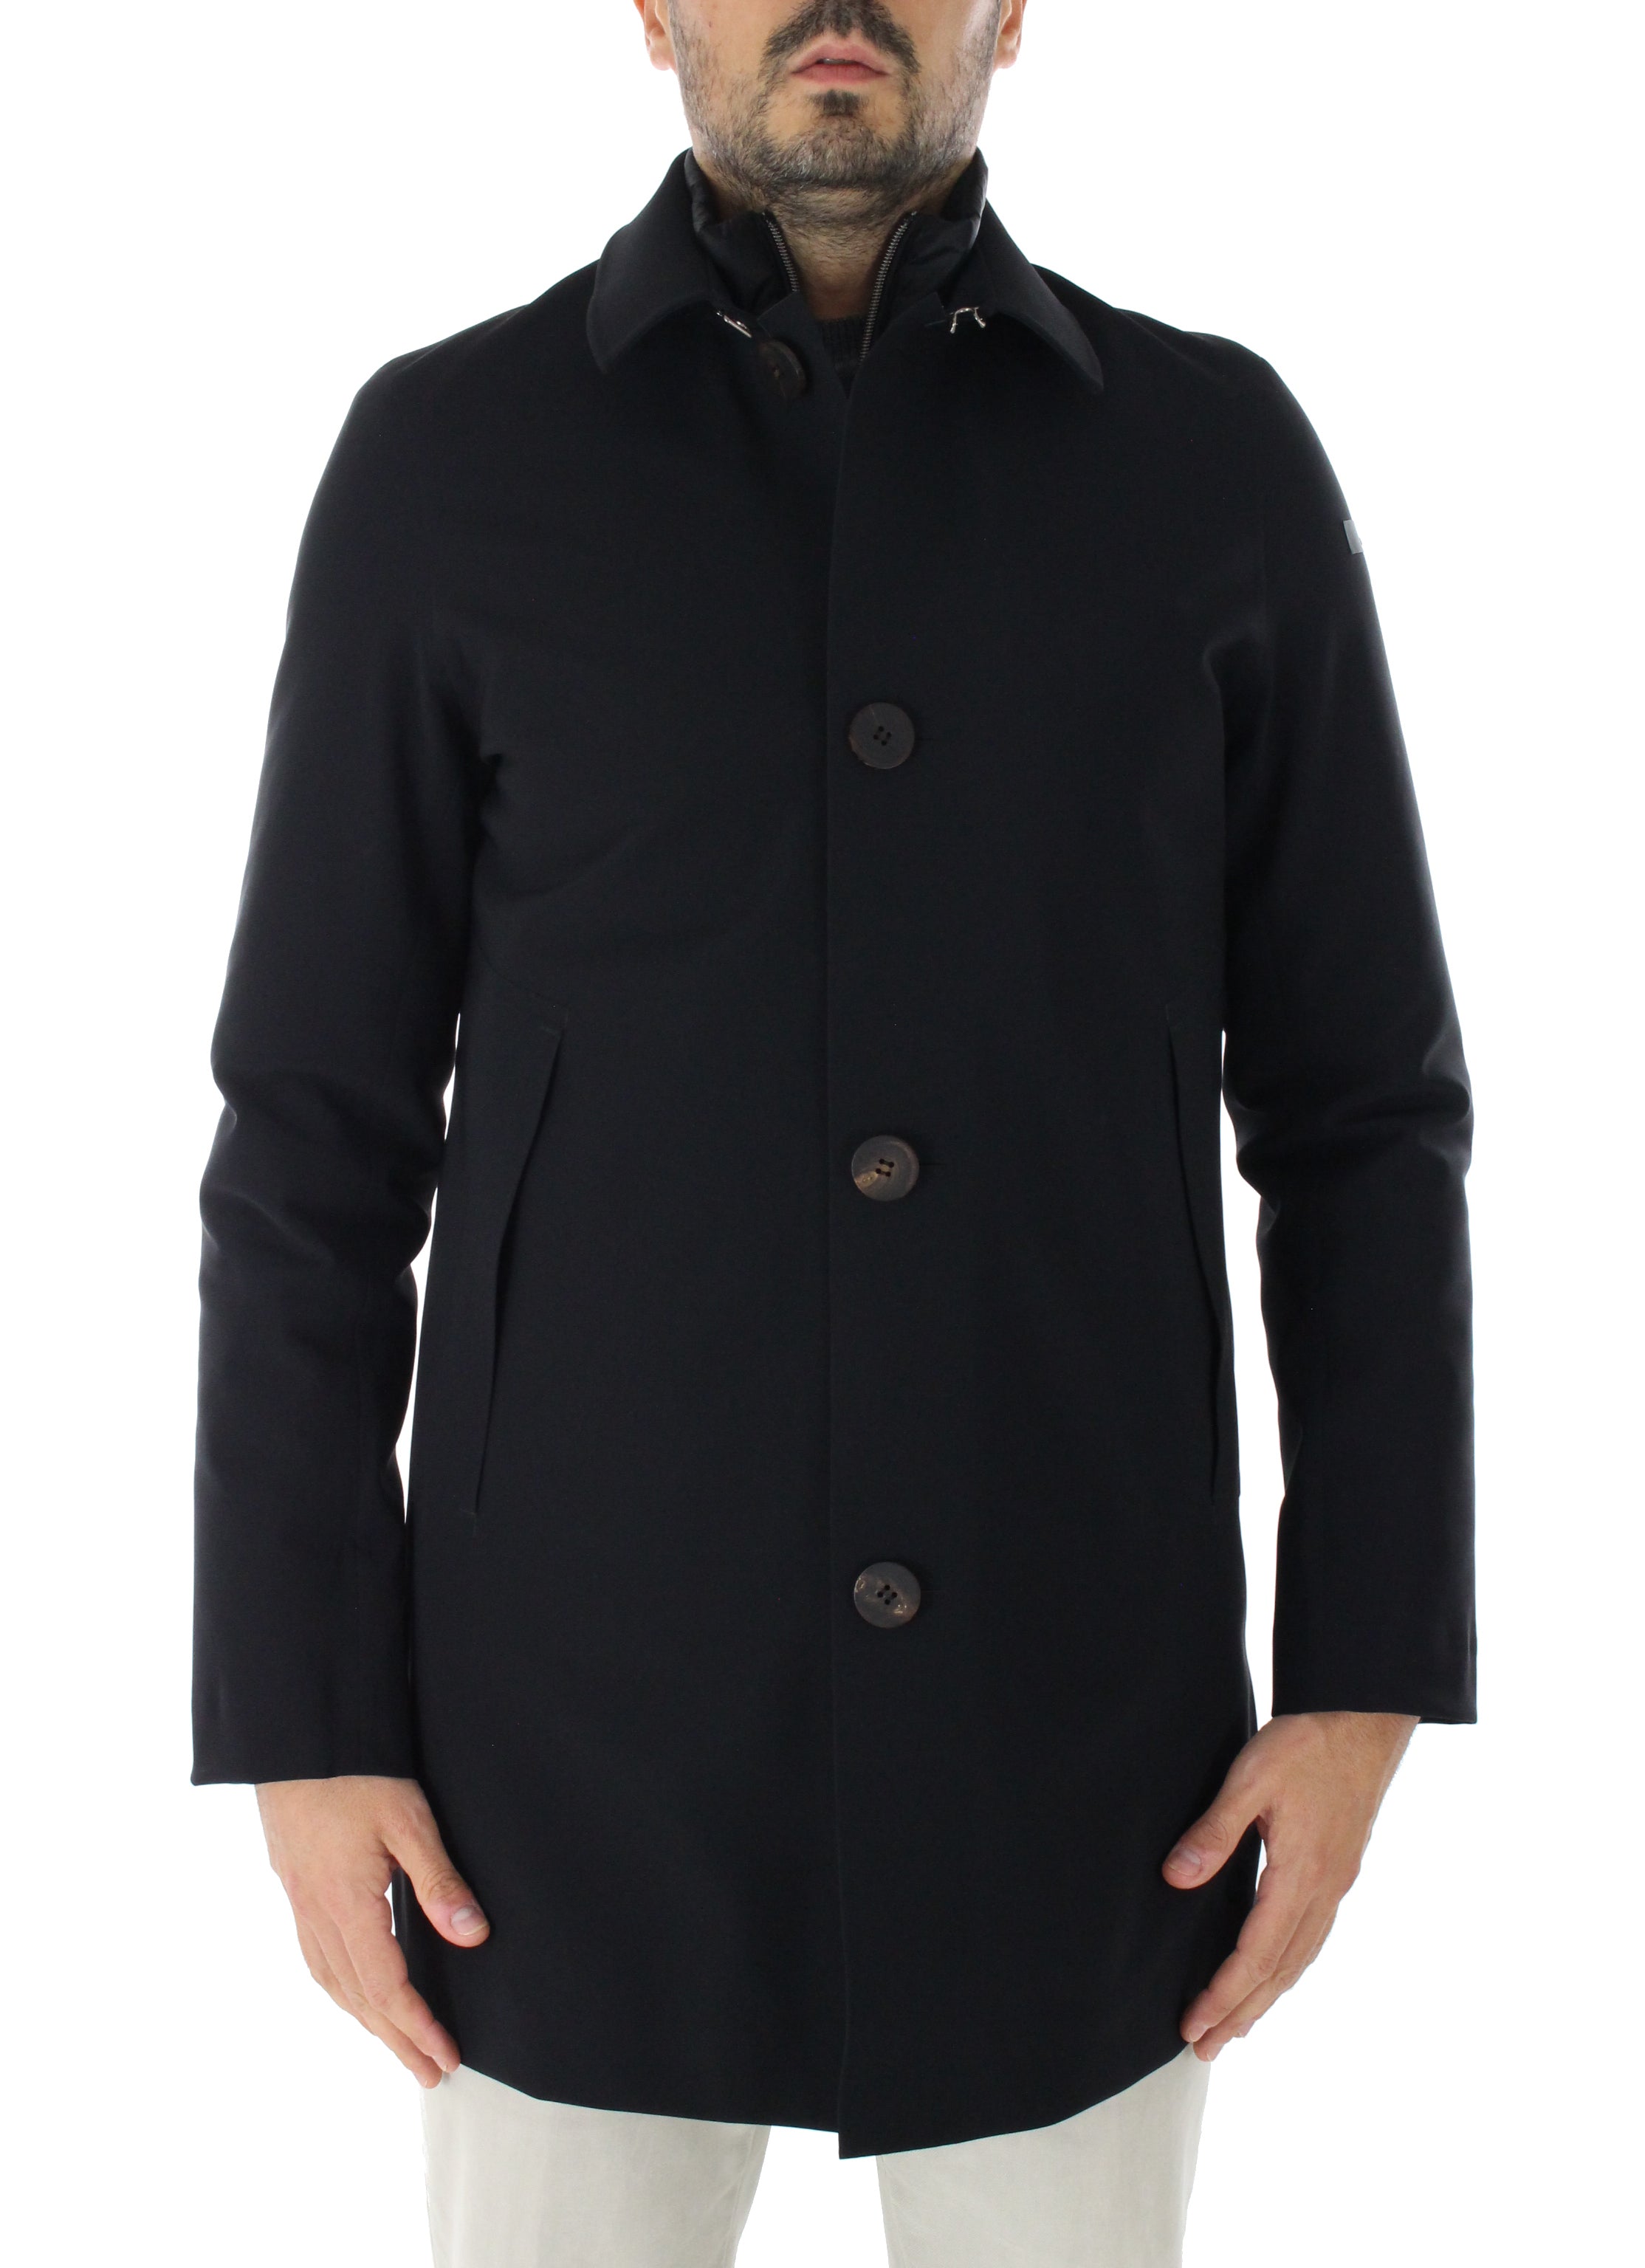 DOWER UNDER CITY COAT W20021 black jacket